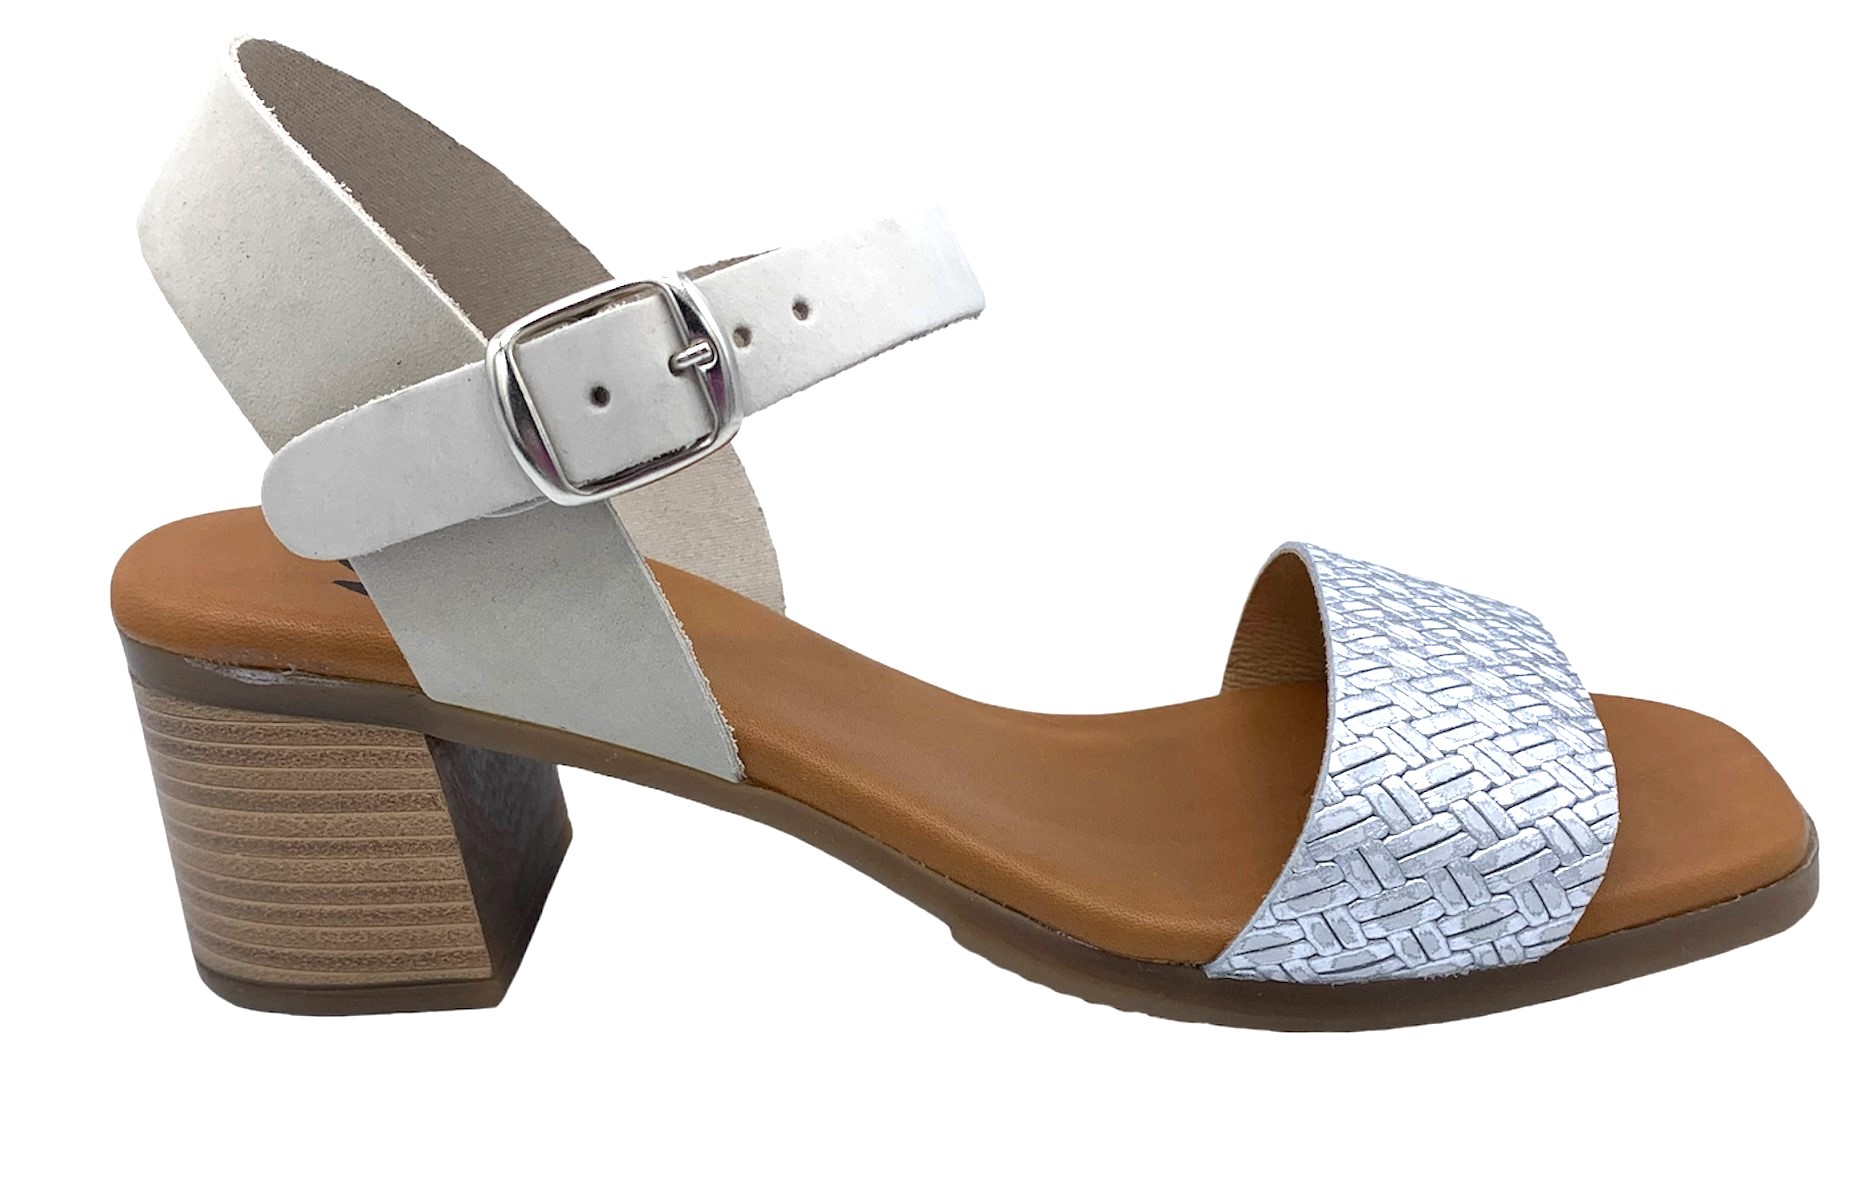 Dámské kožené sandále na podpatku MISSTIC 116004 sv.šedé Velikost: 37 (EU)